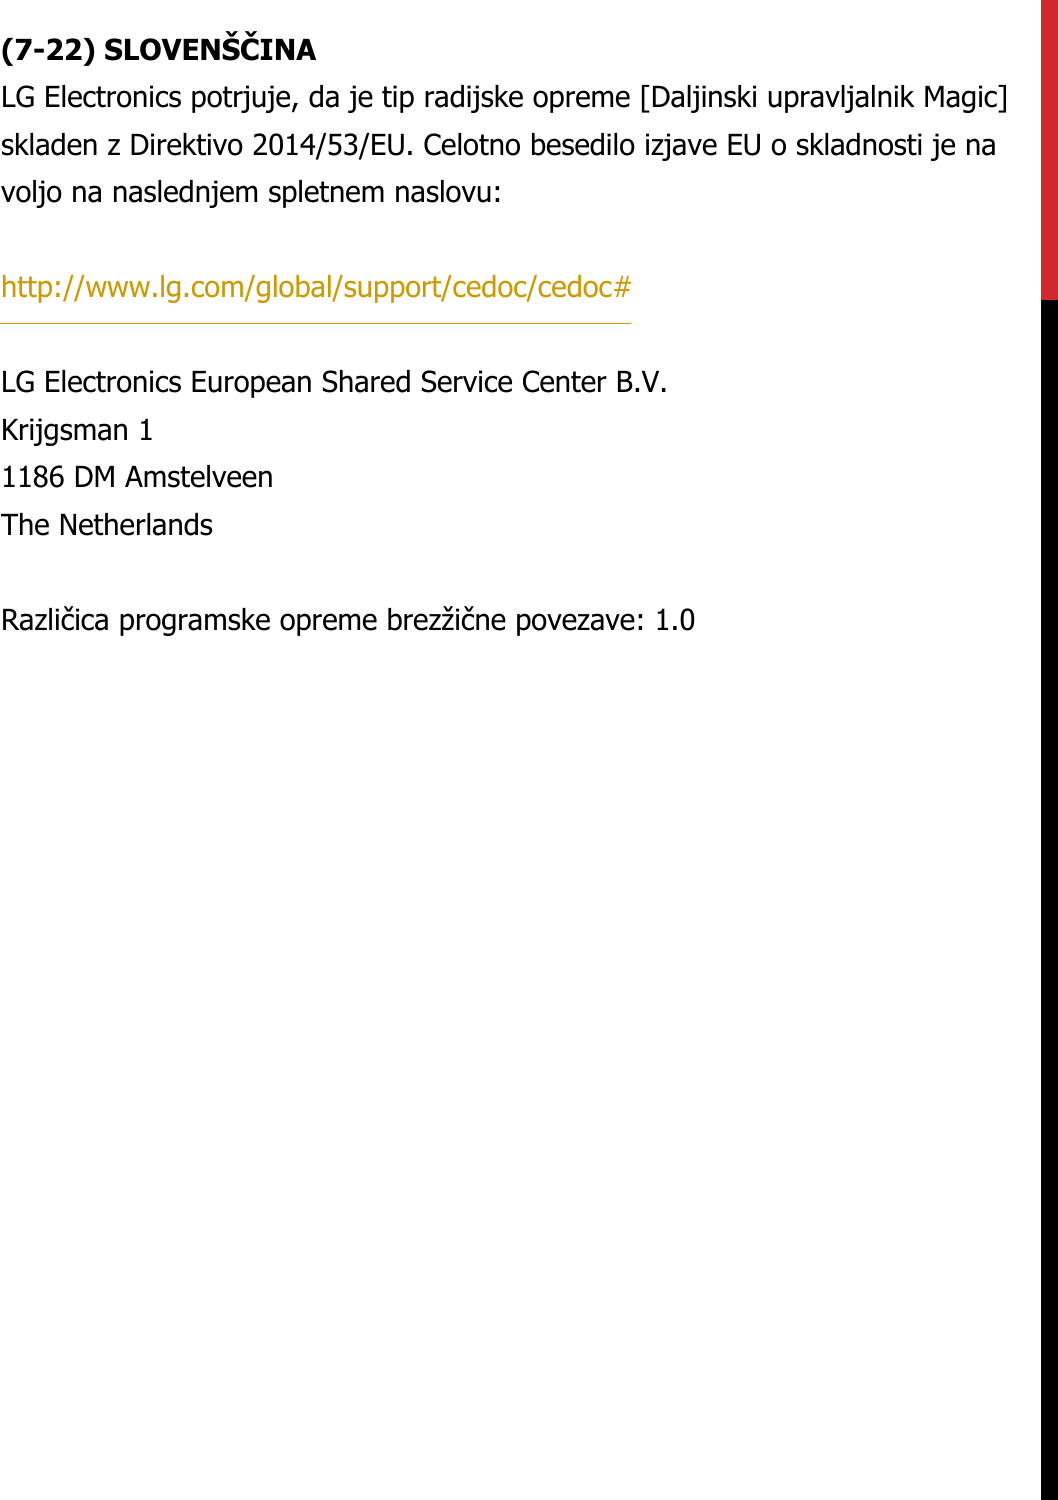 (7-22) SLOVENŠČINALG Electronics potrjuje, da je tip radijske opreme [Daljinski upravljalnik Magic] skladen z Direktivo 2014/53/EU. Celotno besedilo izjave EU o skladnosti je na voljo na naslednjem spletnem naslovu:   http://www.lg.com/global/support/cedoc/cedoc#   LG Electronics European Shared Service Center B.V.  Krijgsman 1  1186 DM Amstelveen  The Netherlands   Različica programske opreme brezžične povezave: 1.0